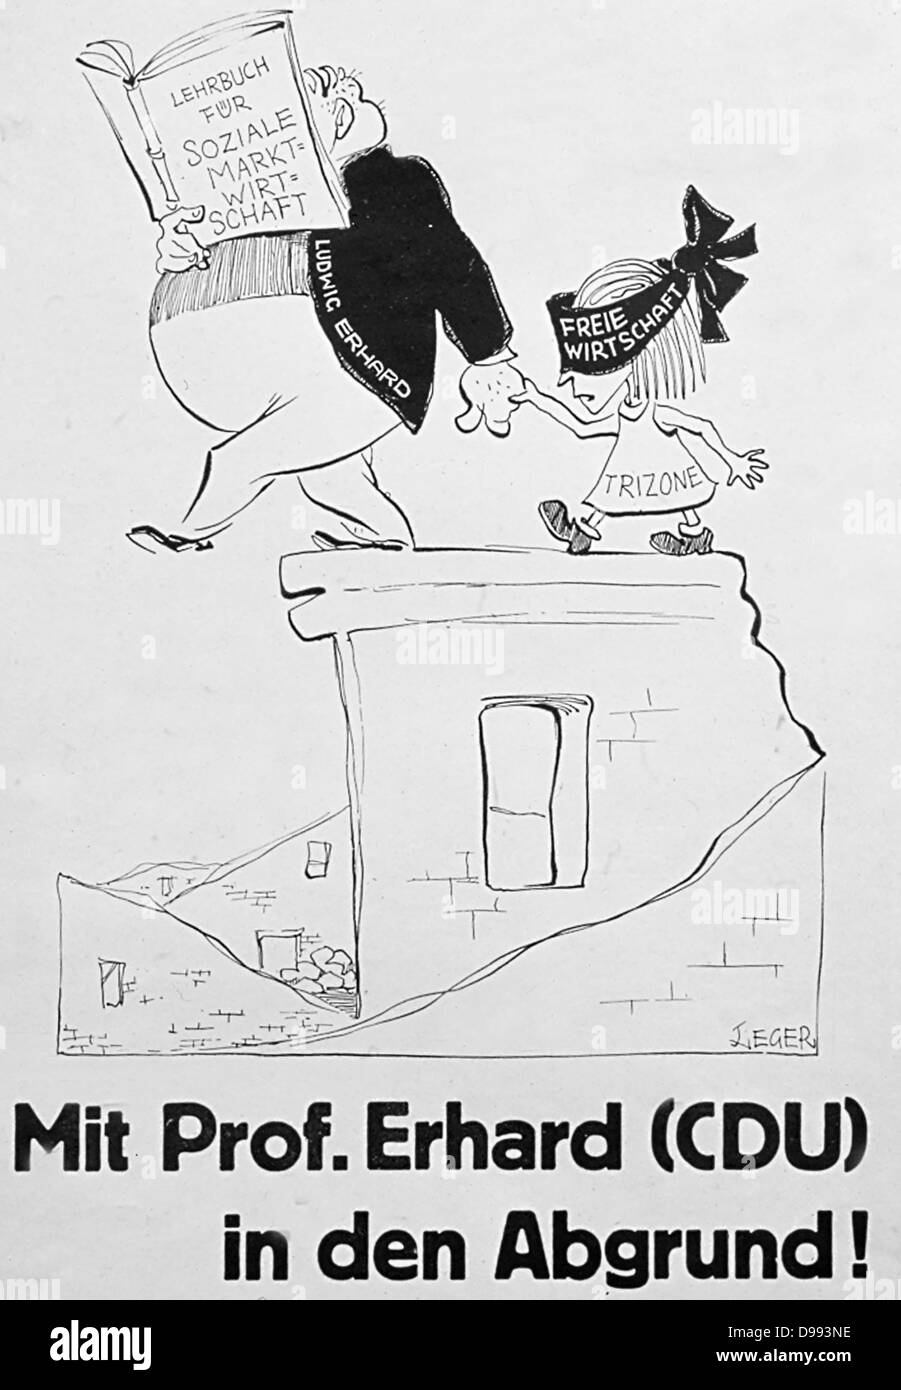 'Mit Pof. Erhard (CDU) in den Abgrund' (mit Pof. Erhard (CDU) im Abgrund). Eine politische Karikatur der 1960er Darstellung Bundeskanzler Erhard Deutschland in der EG Free Trade Zone. Stockfoto